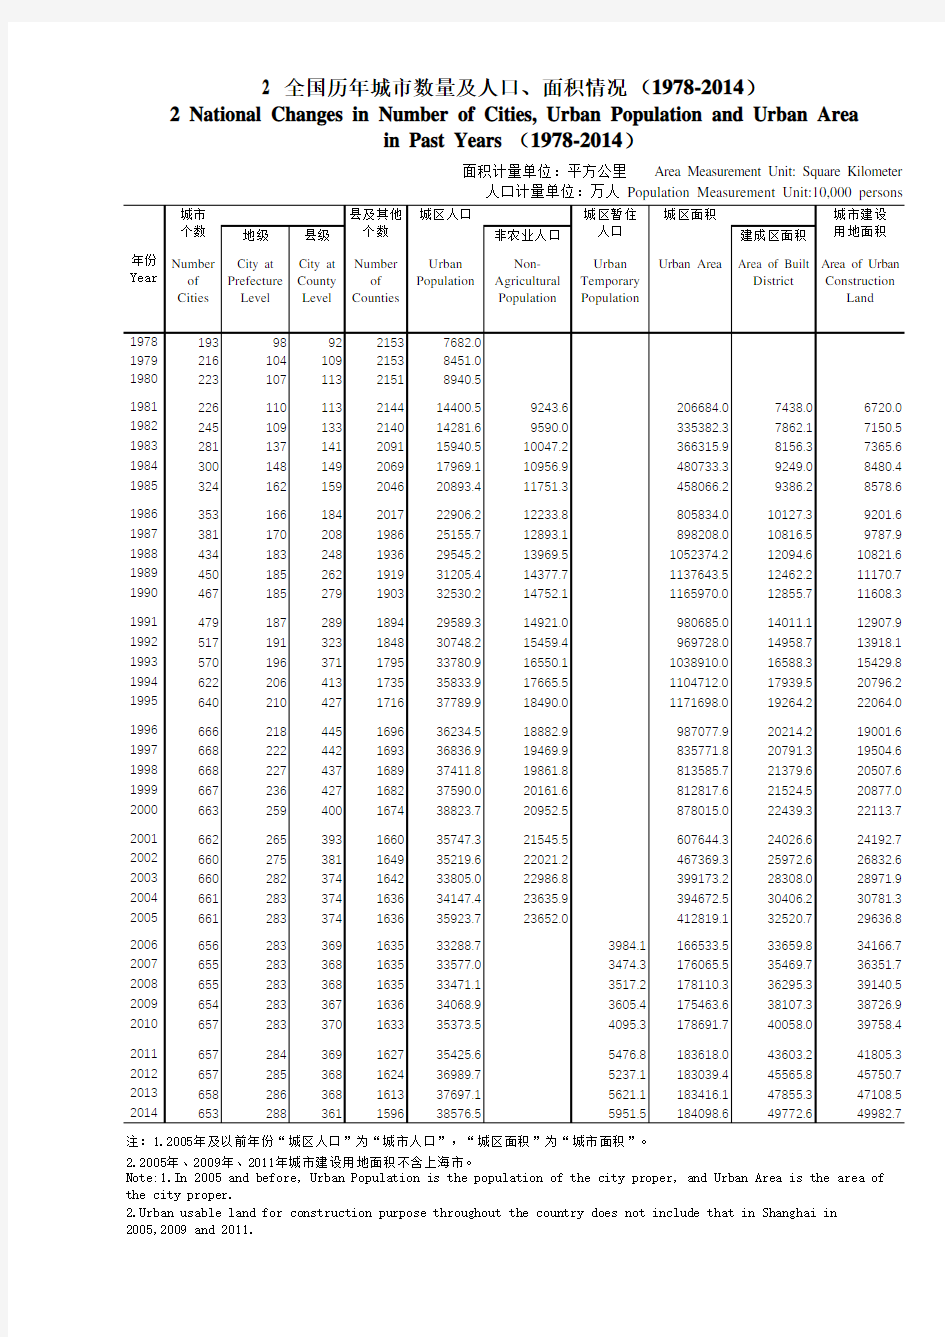 中国城市建设统计年鉴：2 全国历年城市数量及人口、面积情况 (1978-2014)